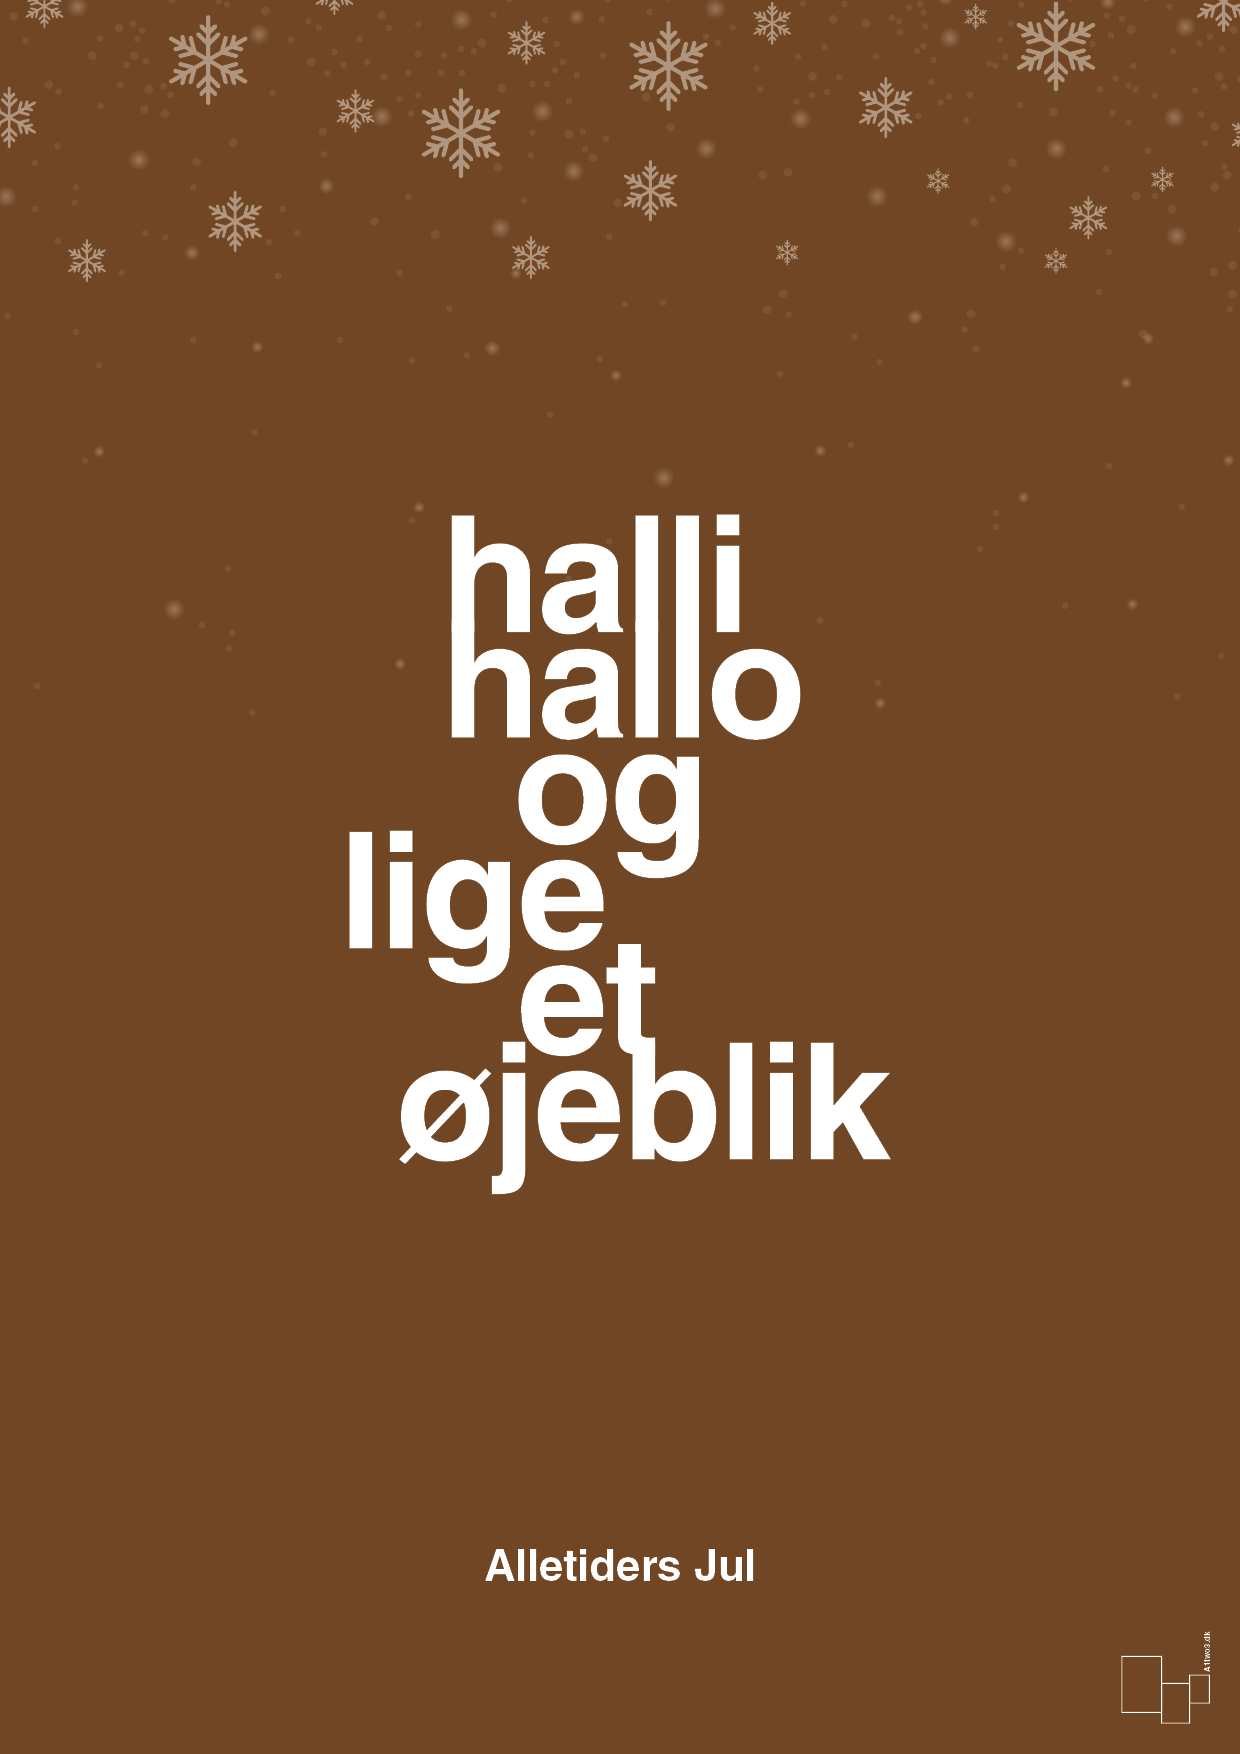 halli hallo og lige et øjeblik - Plakat med Begivenheder i Dark Brown